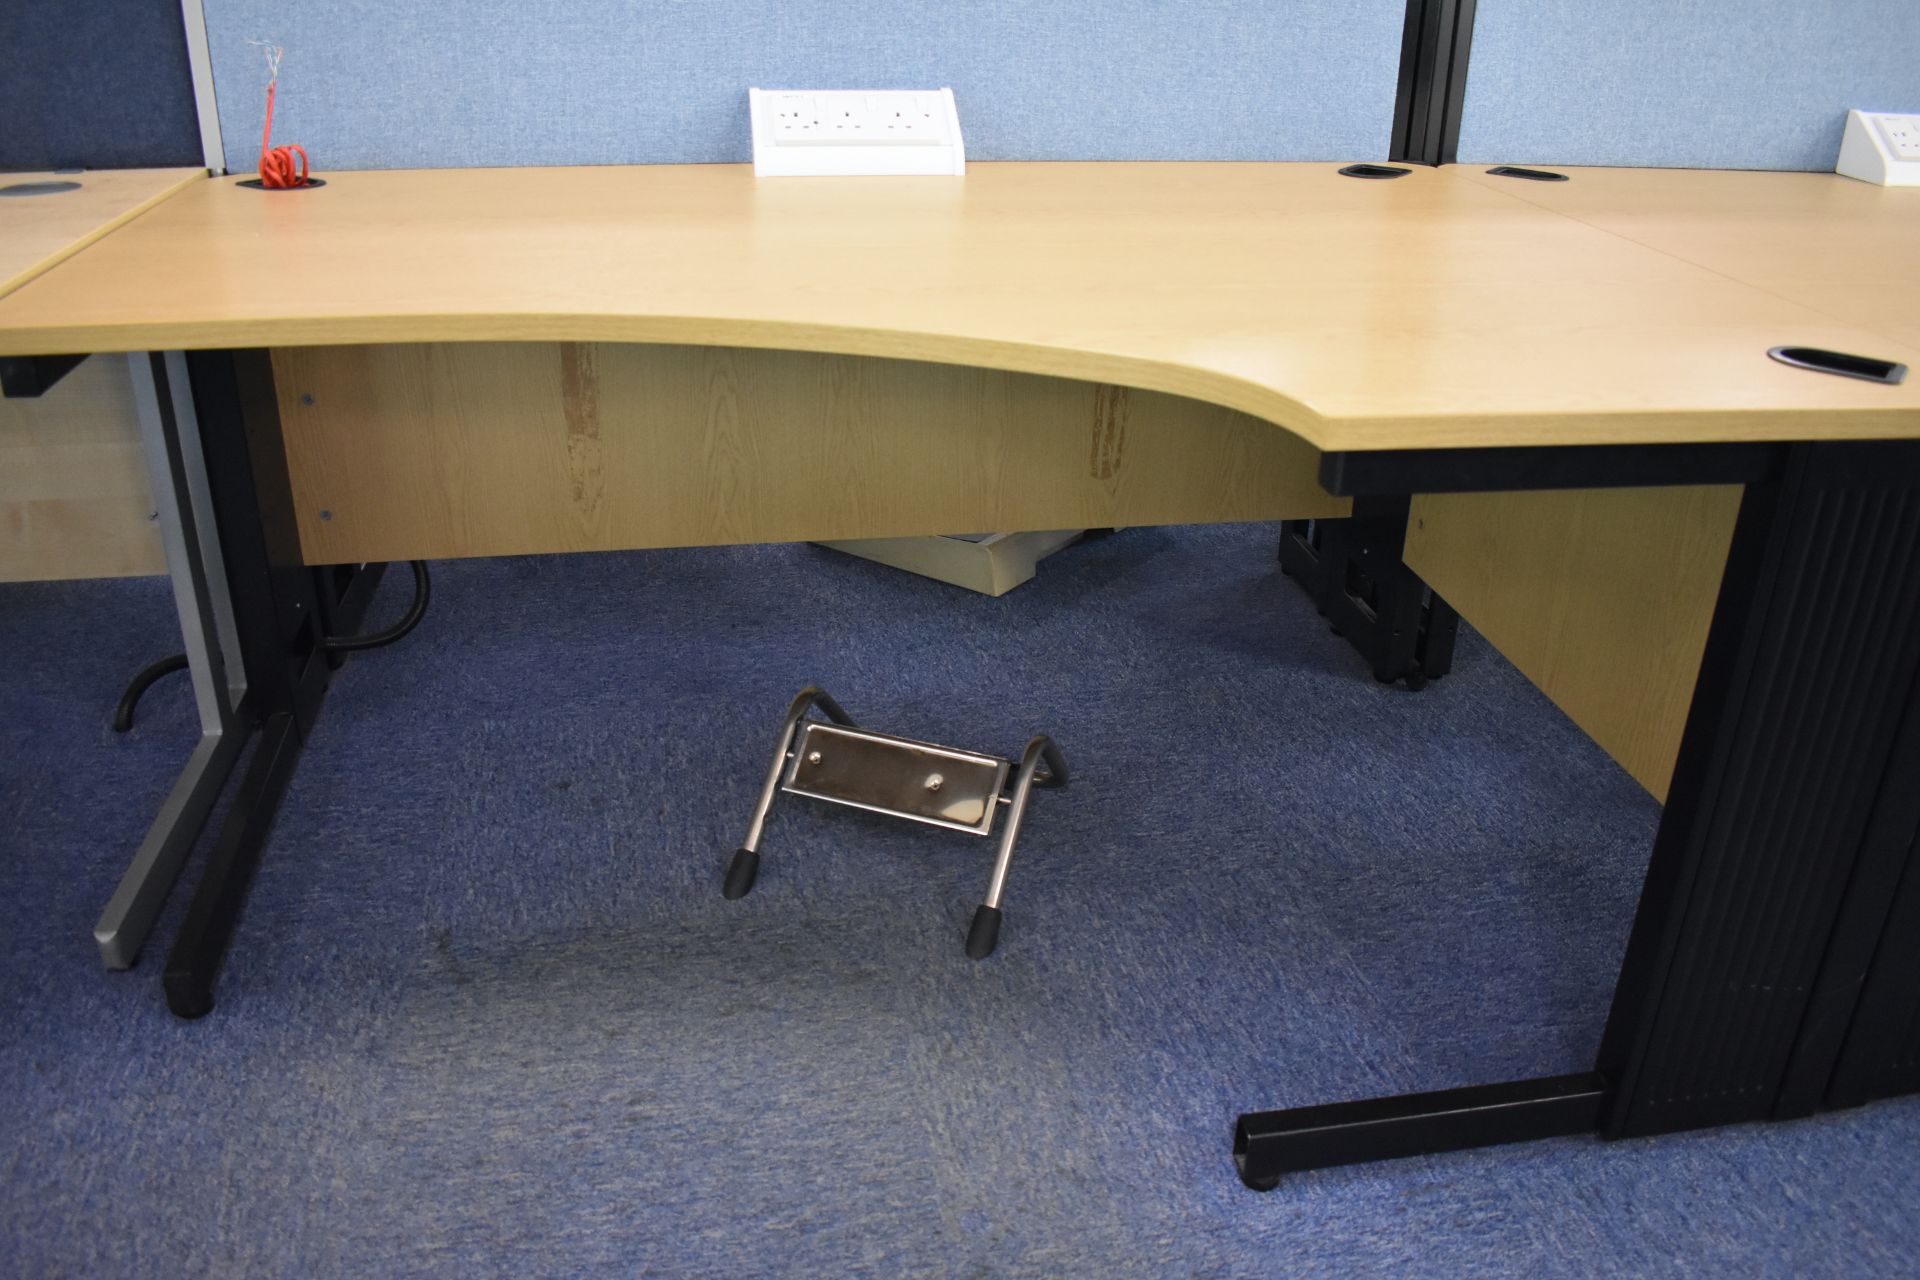 Hard wired corner & wave desks LHs and RHs, desk screen, footrest, task chair, coat stand, pedestal - Image 8 of 18